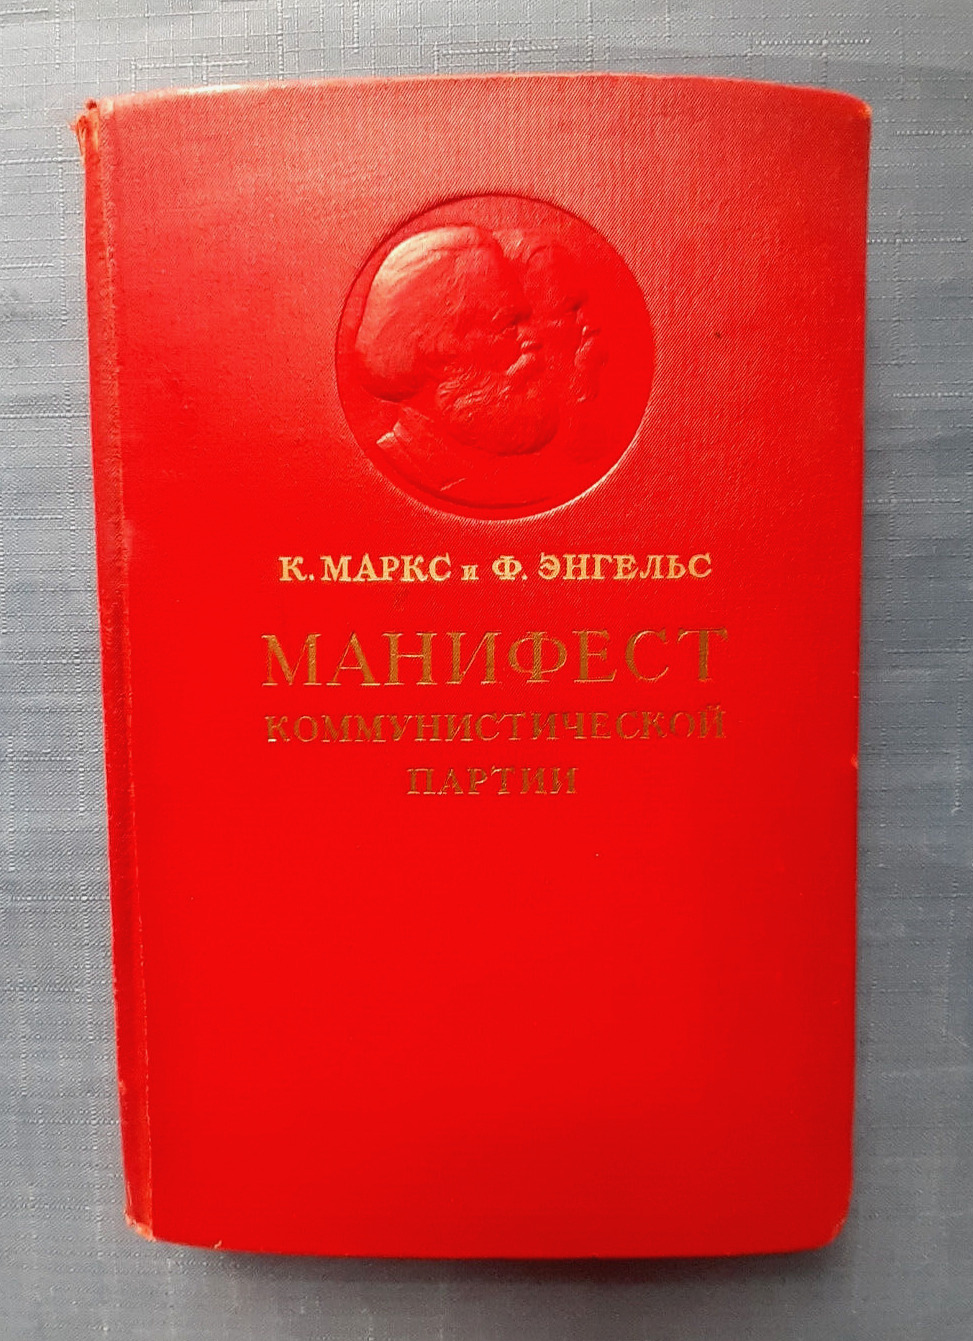 1939 Communist manifesto Karl Marx Friedrich Engels rare vintage Russian book